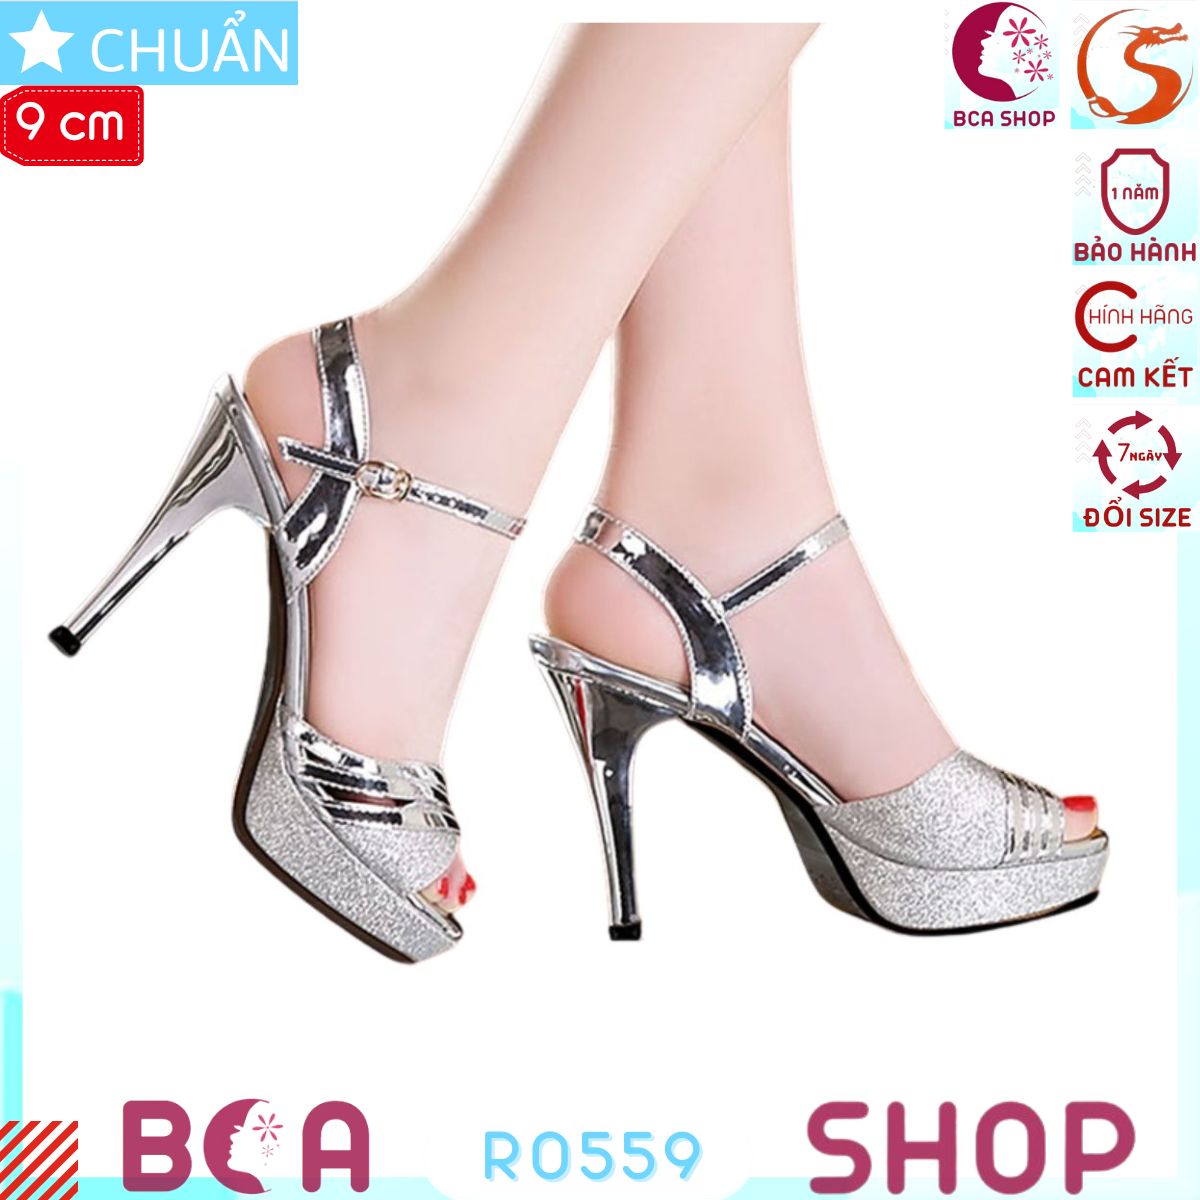 Giày sandal cao gót nữ 9p RO559 màu bạc ROSATA tại BCASHOP gót nhọn, quai ngang bóng nhám sang trọng